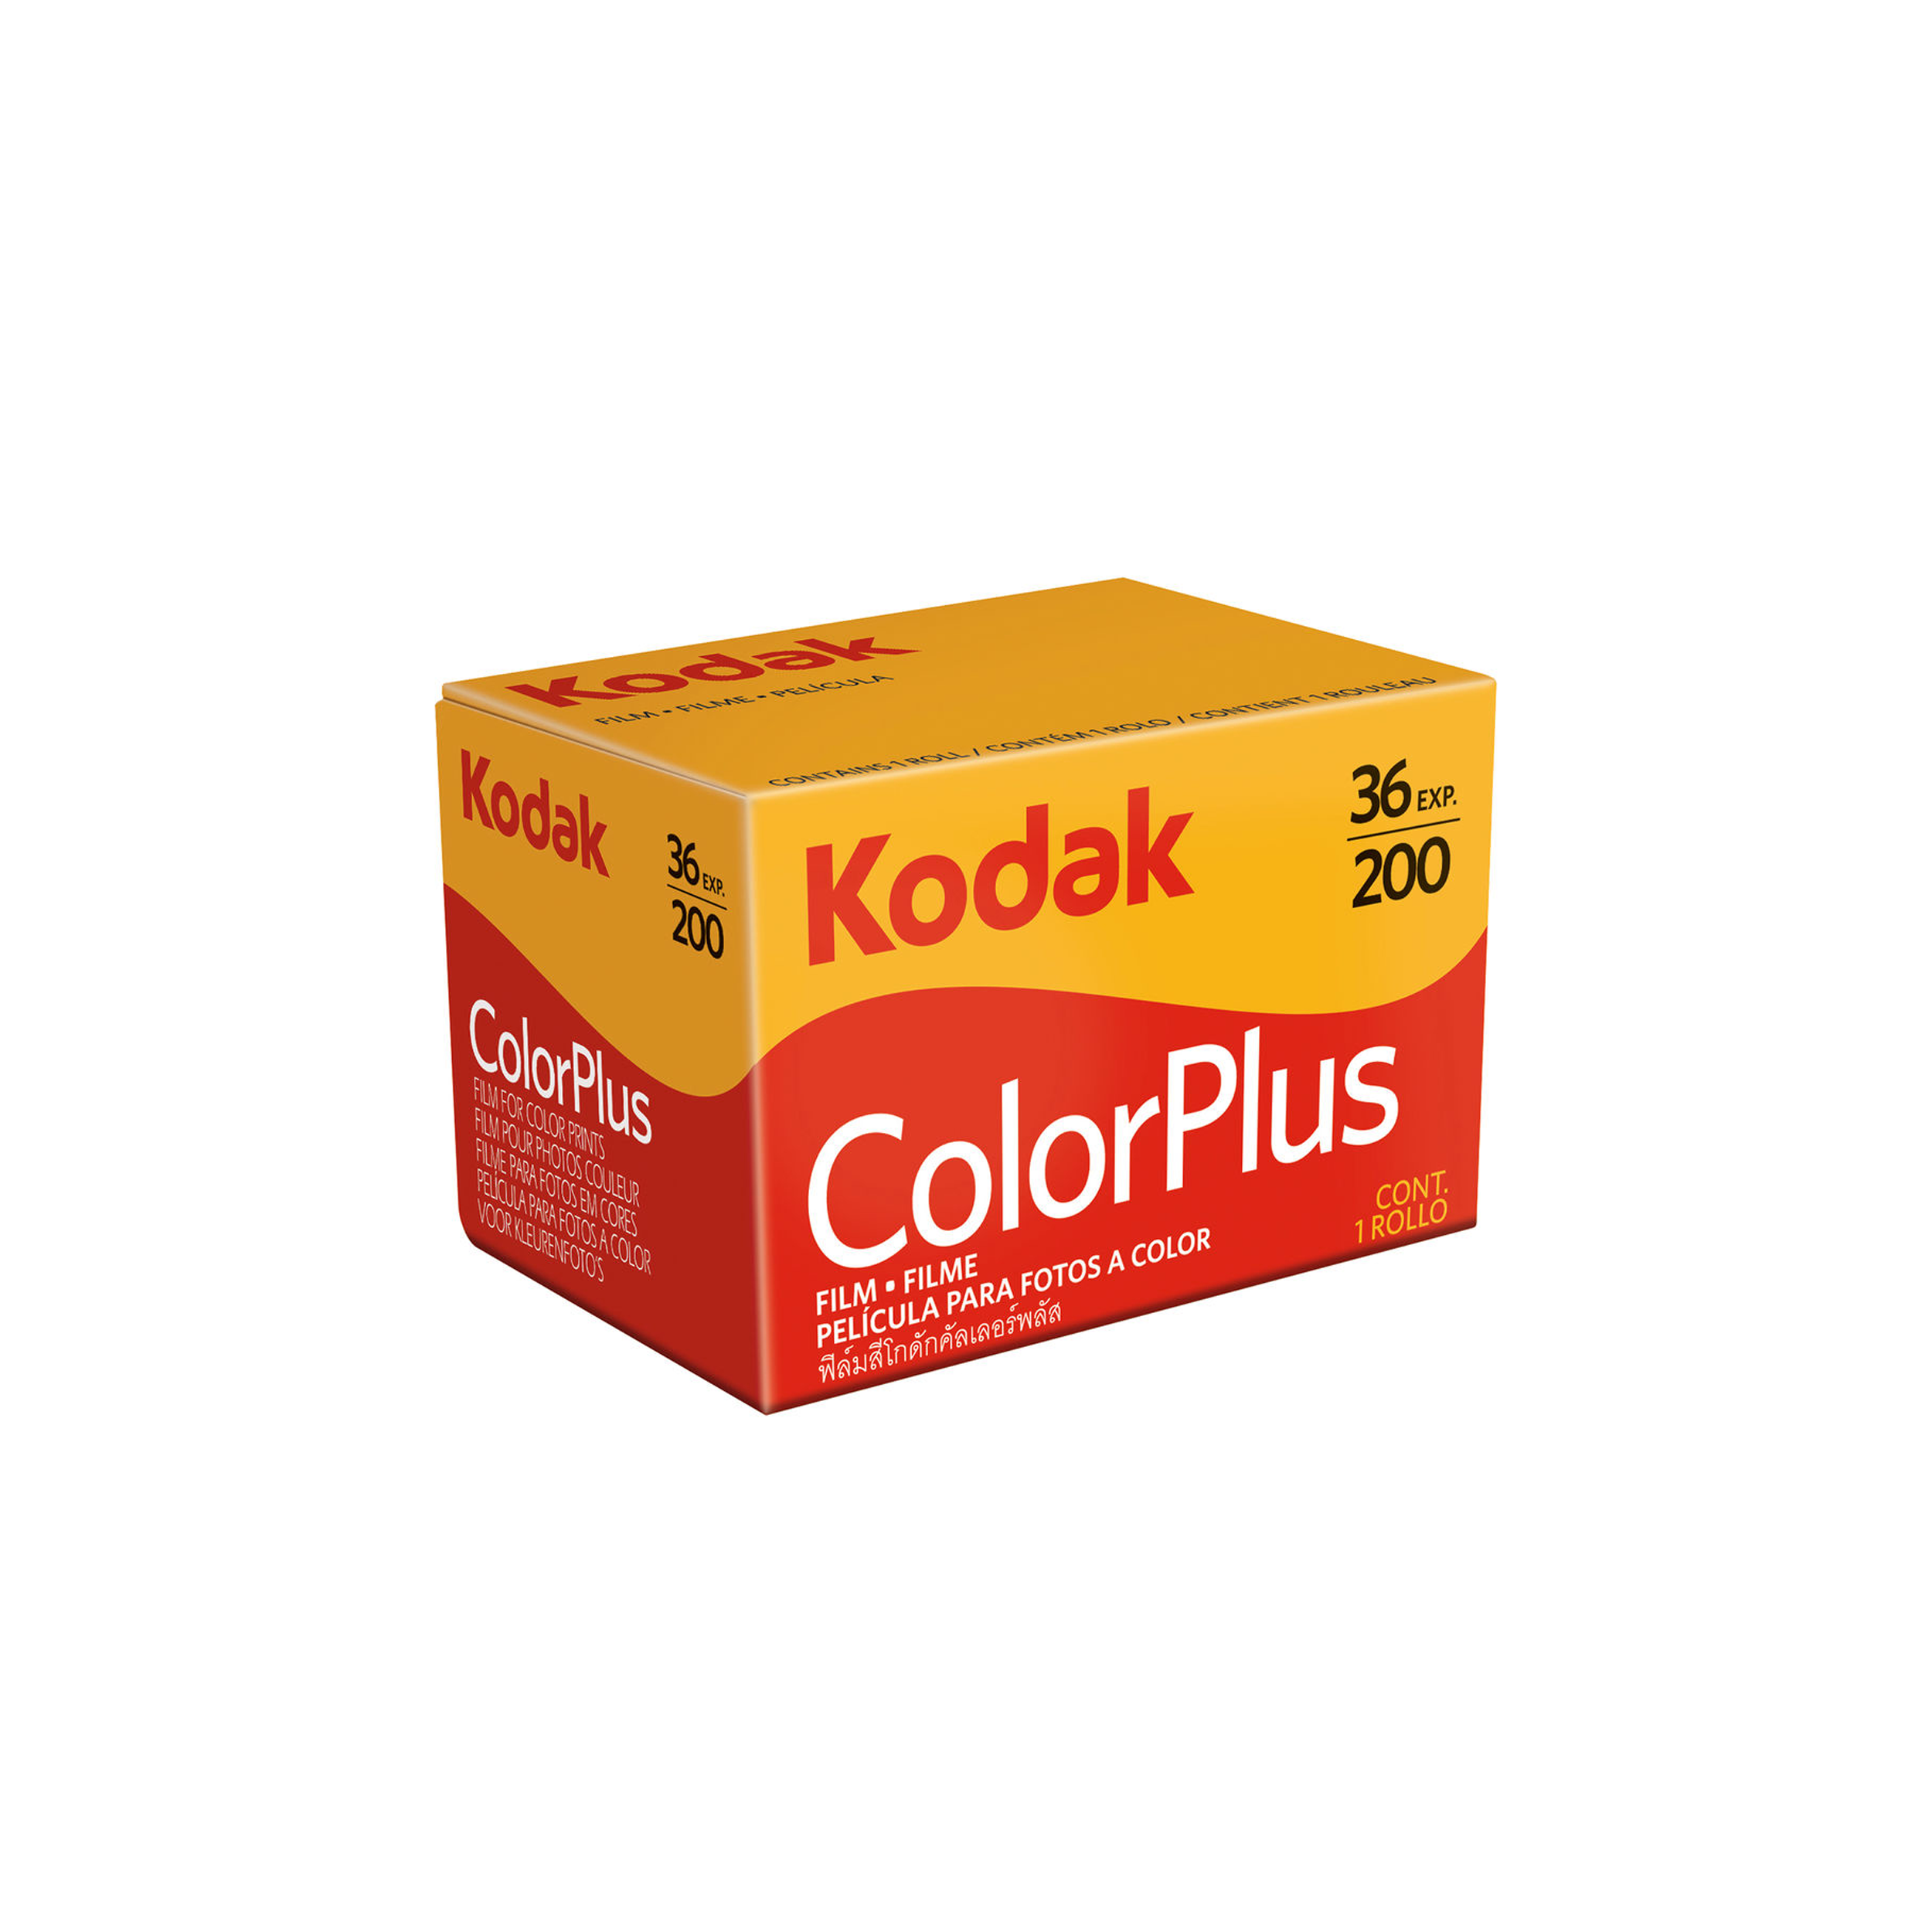 Film Kodak Colorplus 200 Color négatif (film de rouleau de 35 mm, 36 expositions)